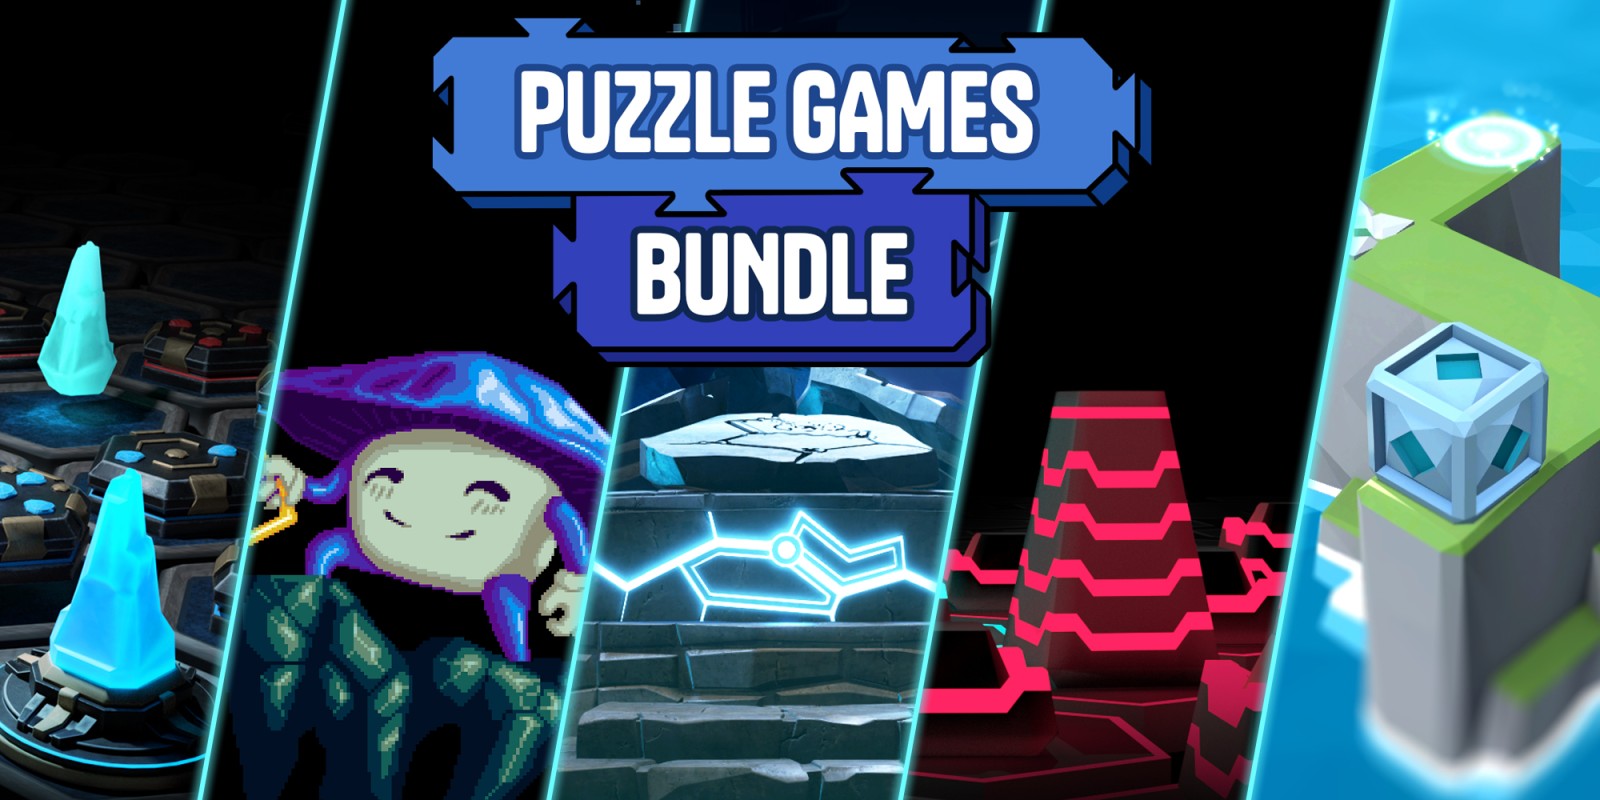 Puzzle Games Bundle (5 in 1)